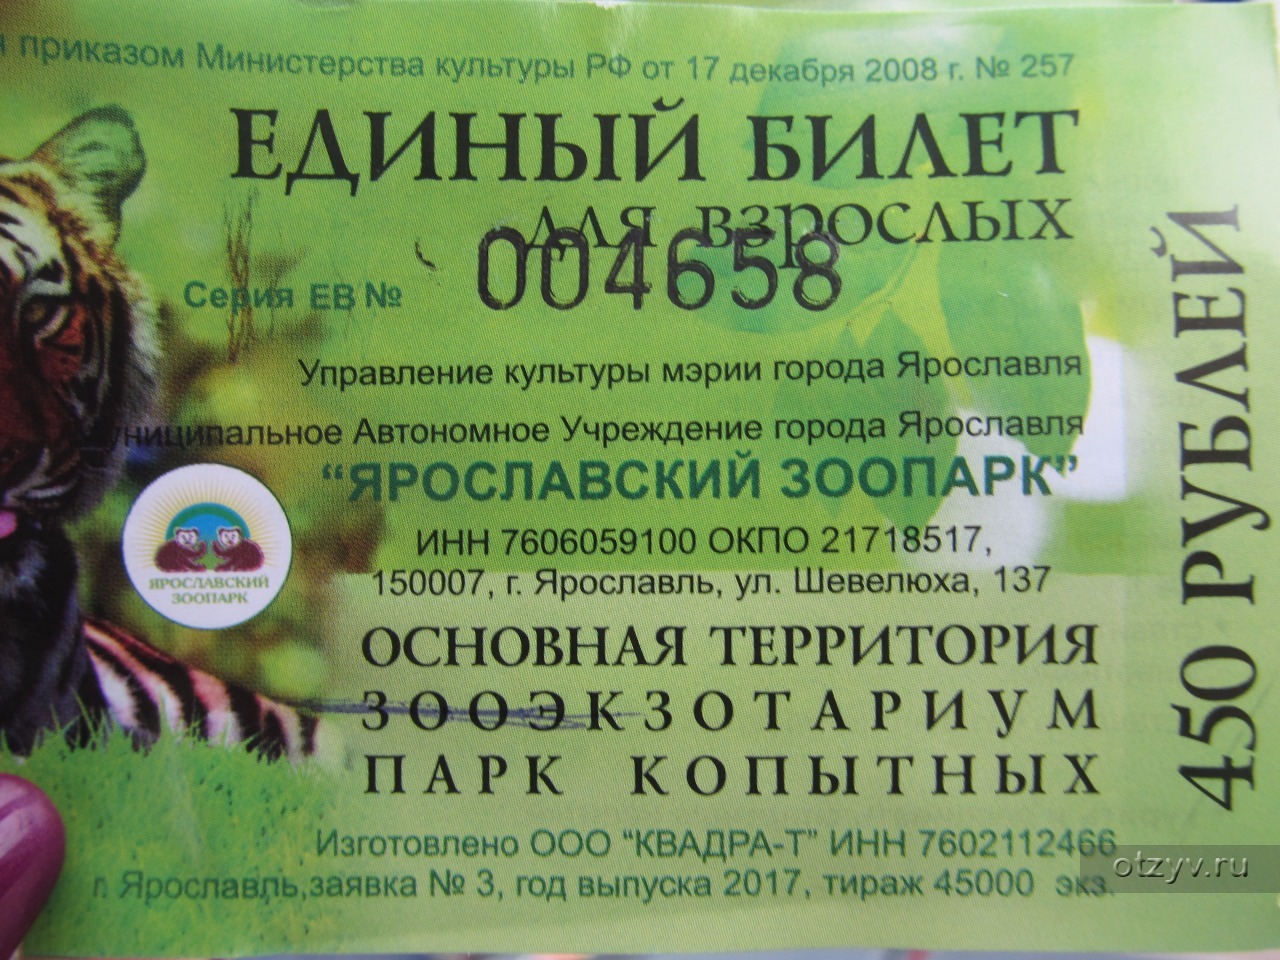 Московский зоопарк входной билет